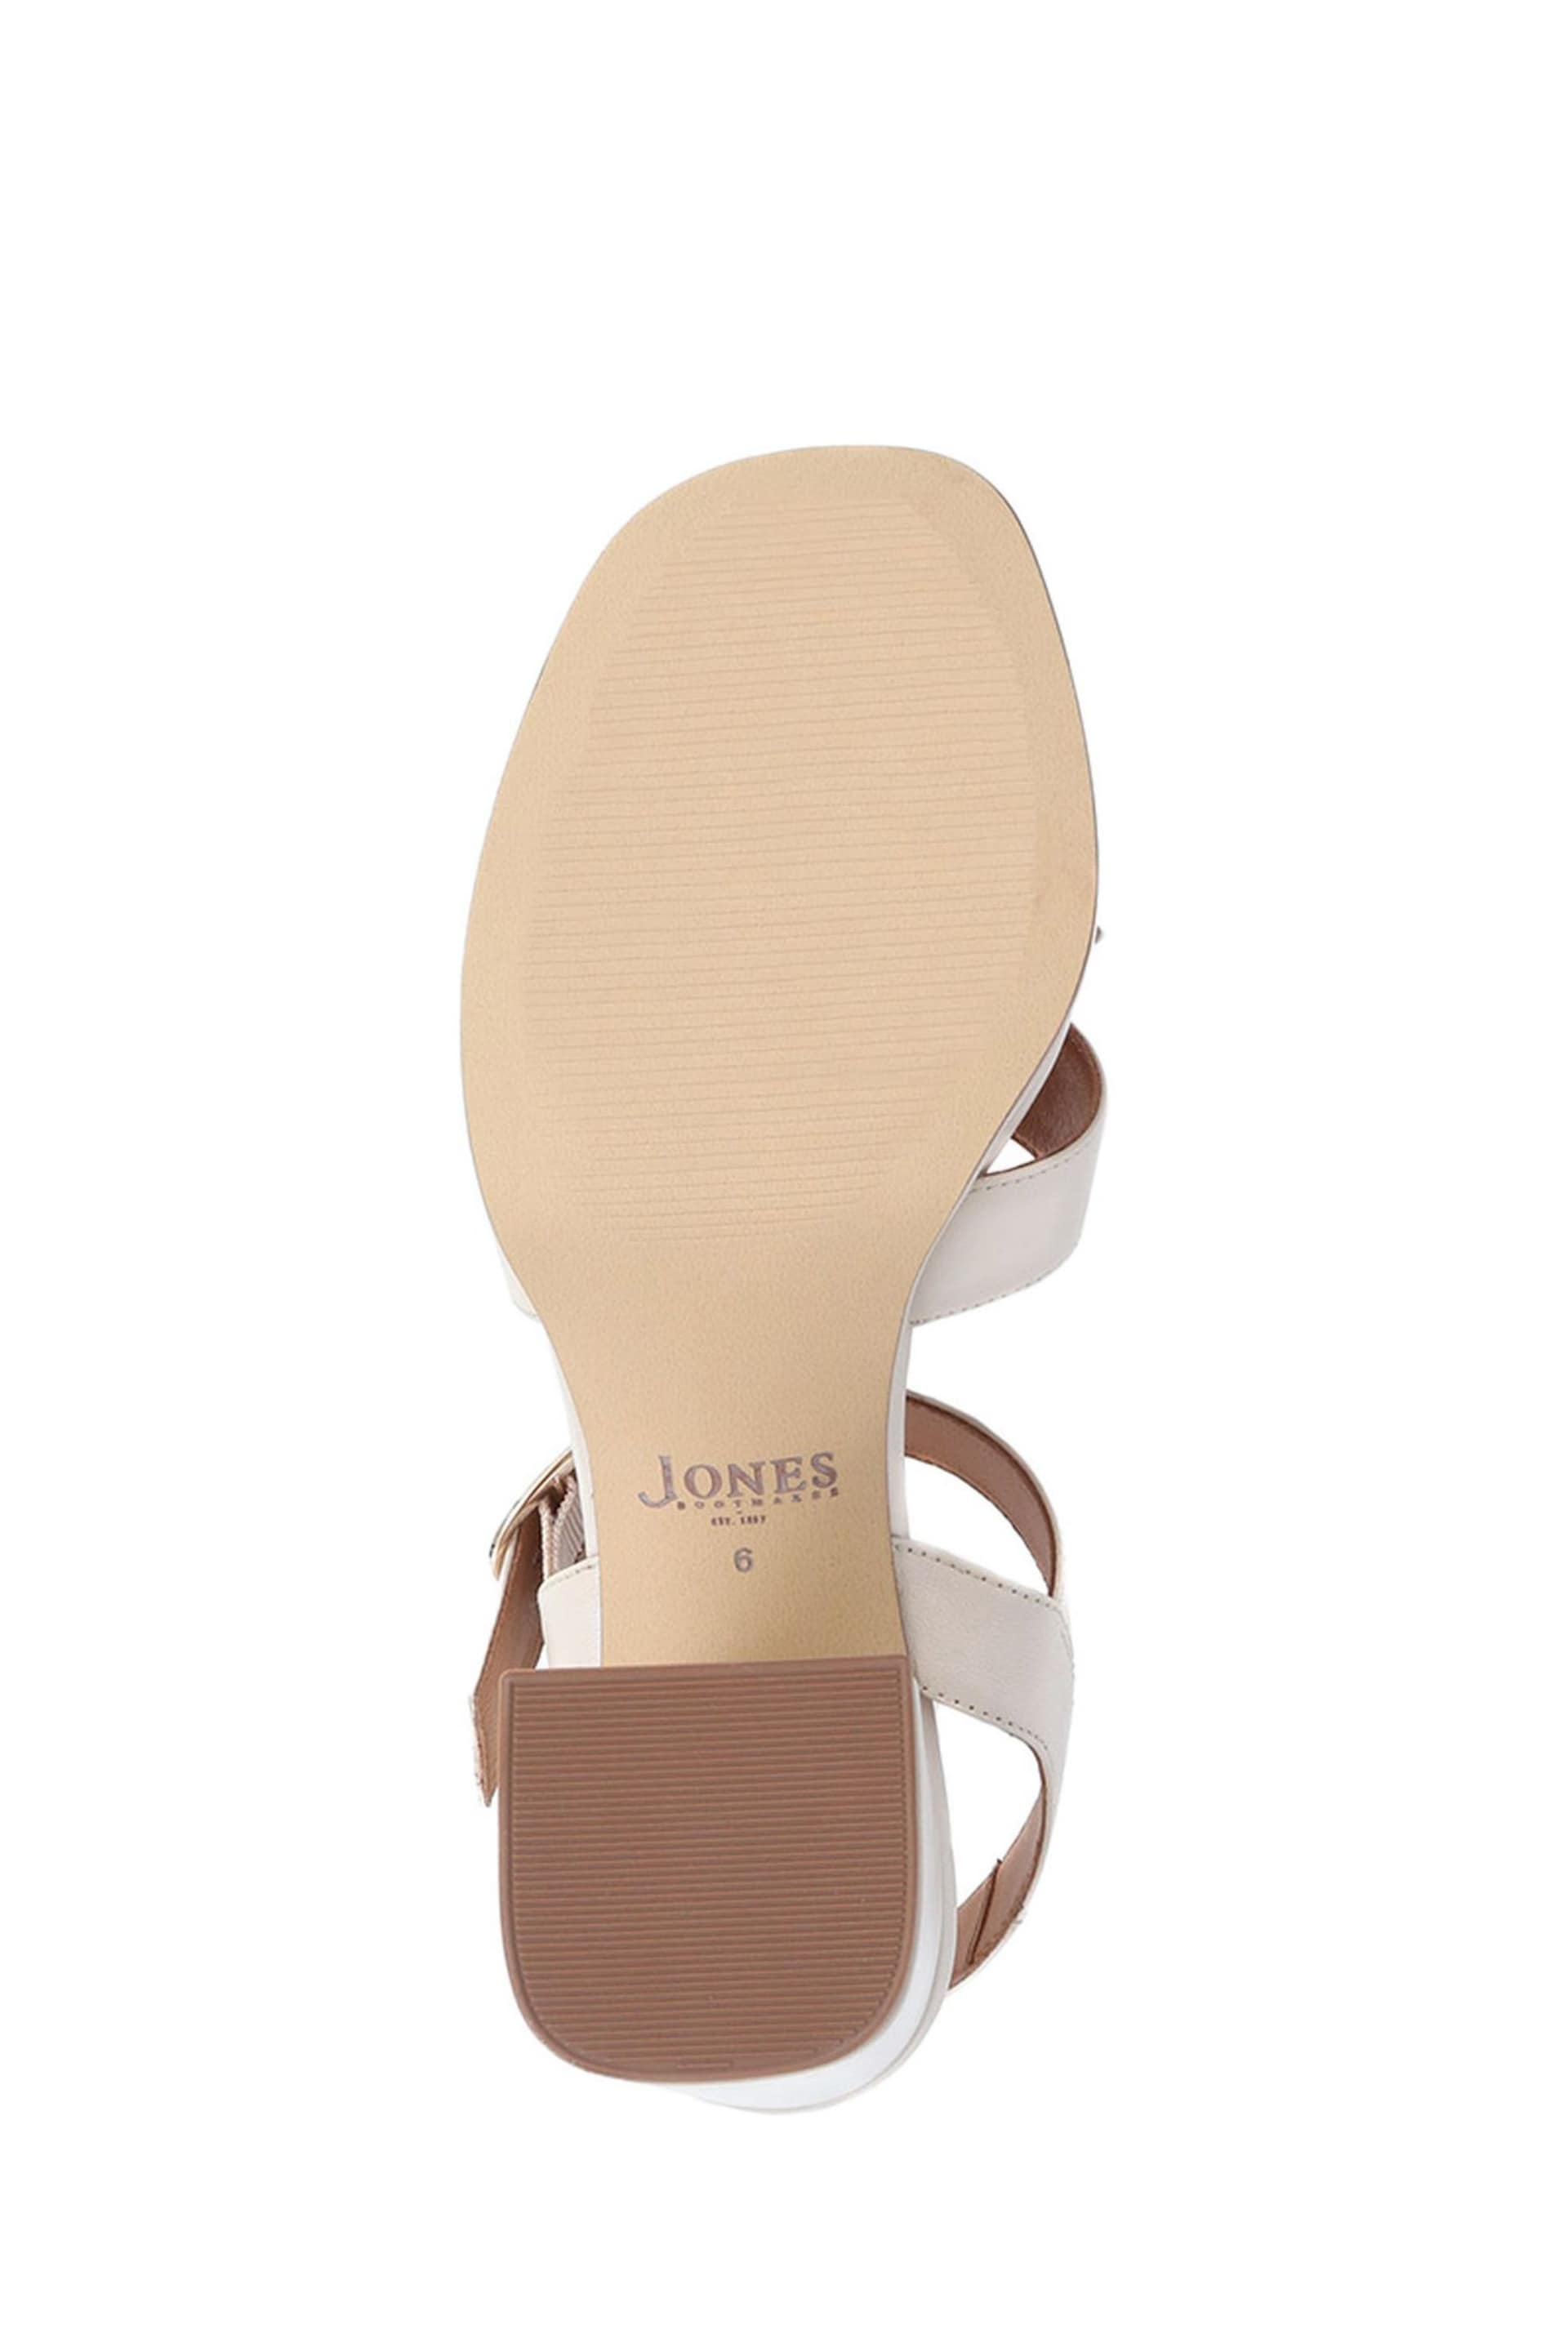 Jones Bootmaker Gladiola 2 Leather Platform Sandals - Image 5 of 5